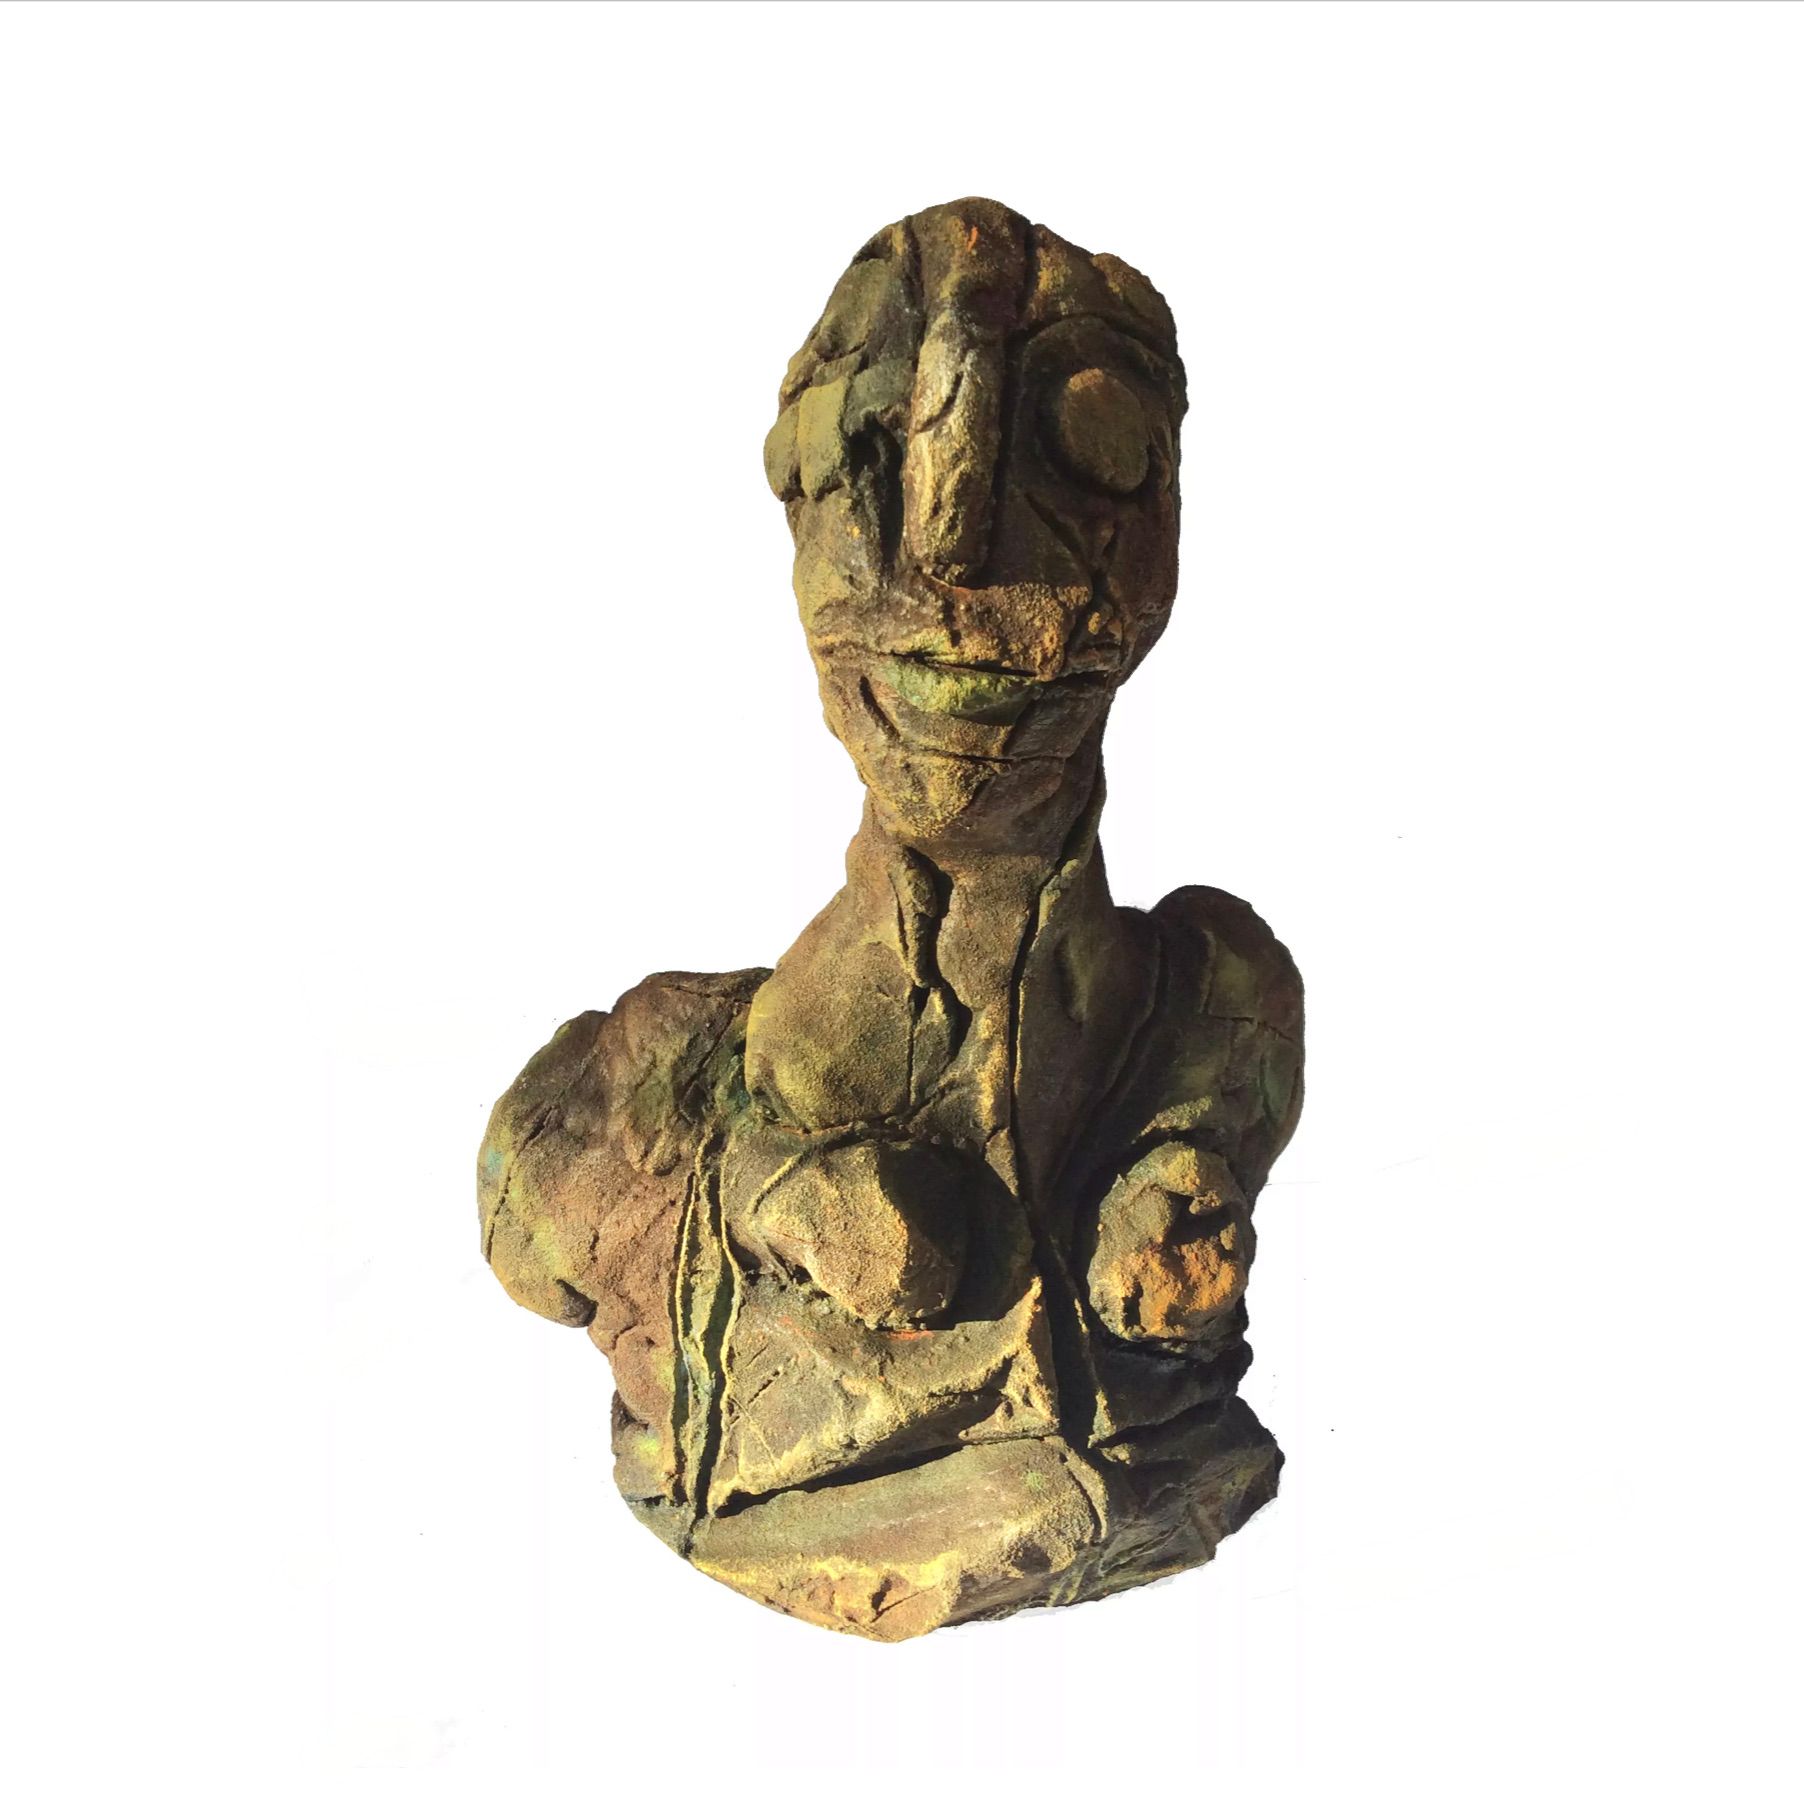 伊洛娜-施密特的 "小半身像 "展示了一个由粘土制成的头部模型，经过建模和烧制，断裂结构质量，青铜色